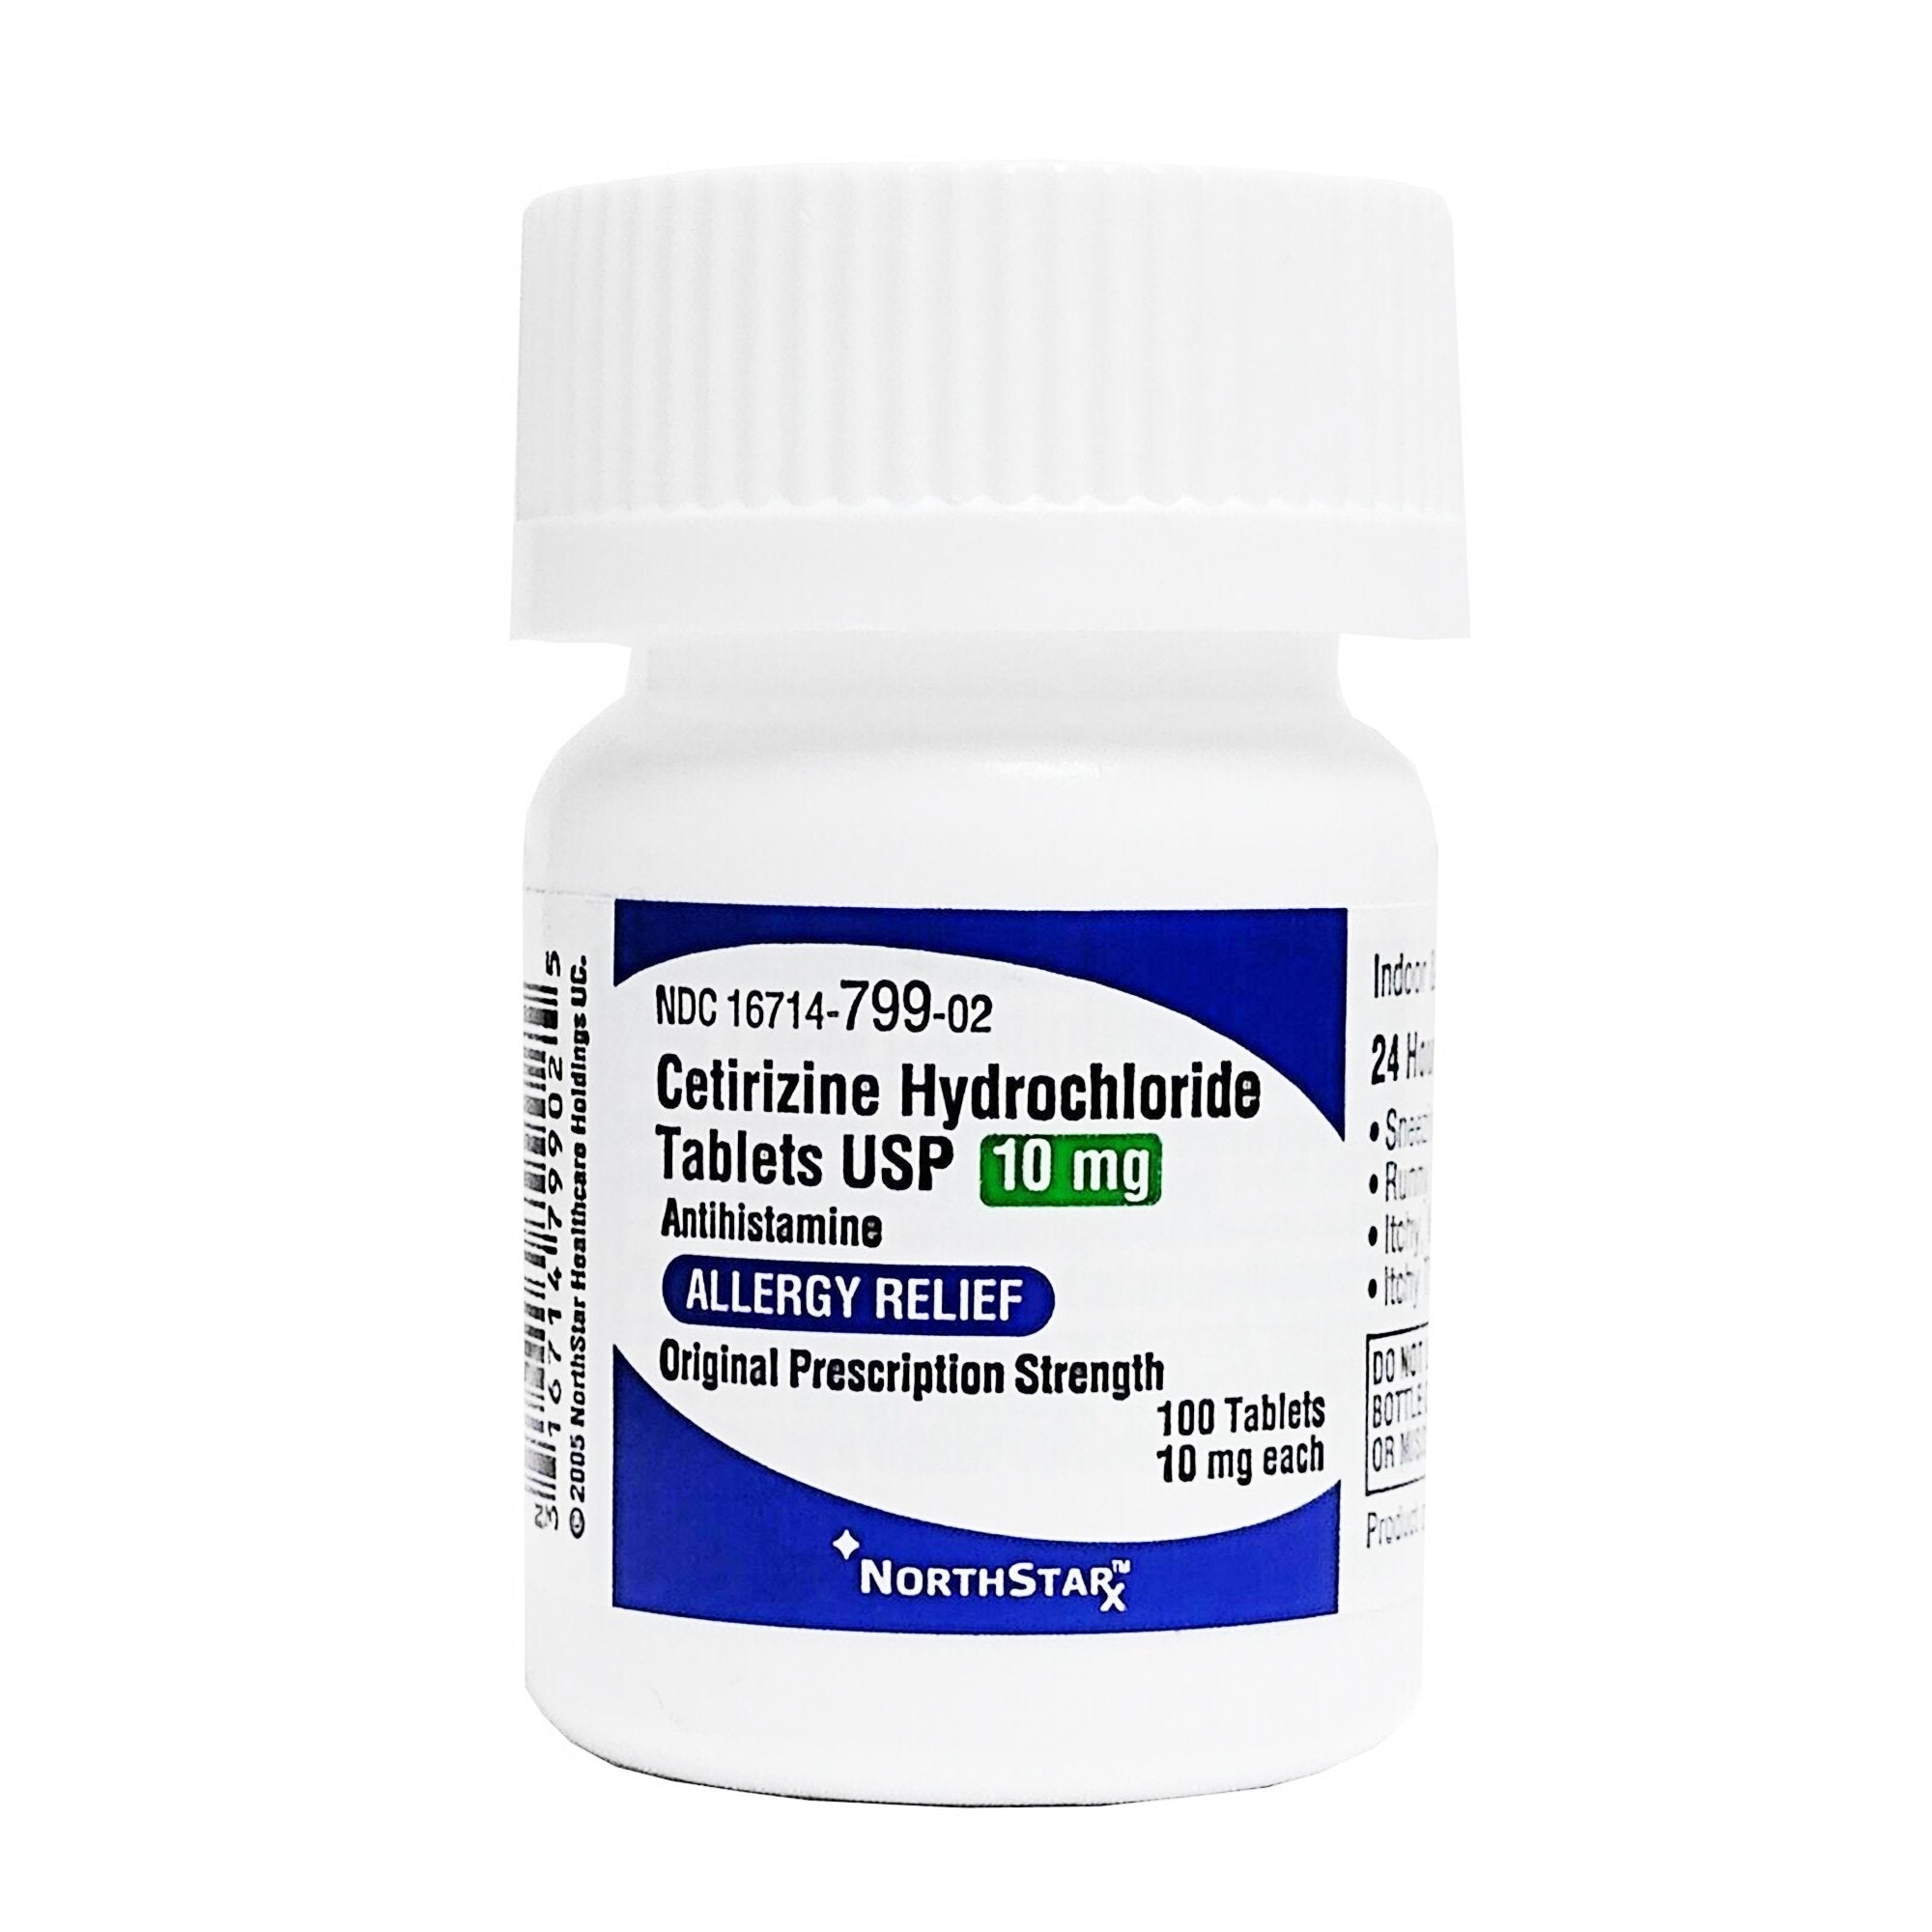 NorthStar Cetirizine HCl 10 mg Tablet Bottle 100 Tablets